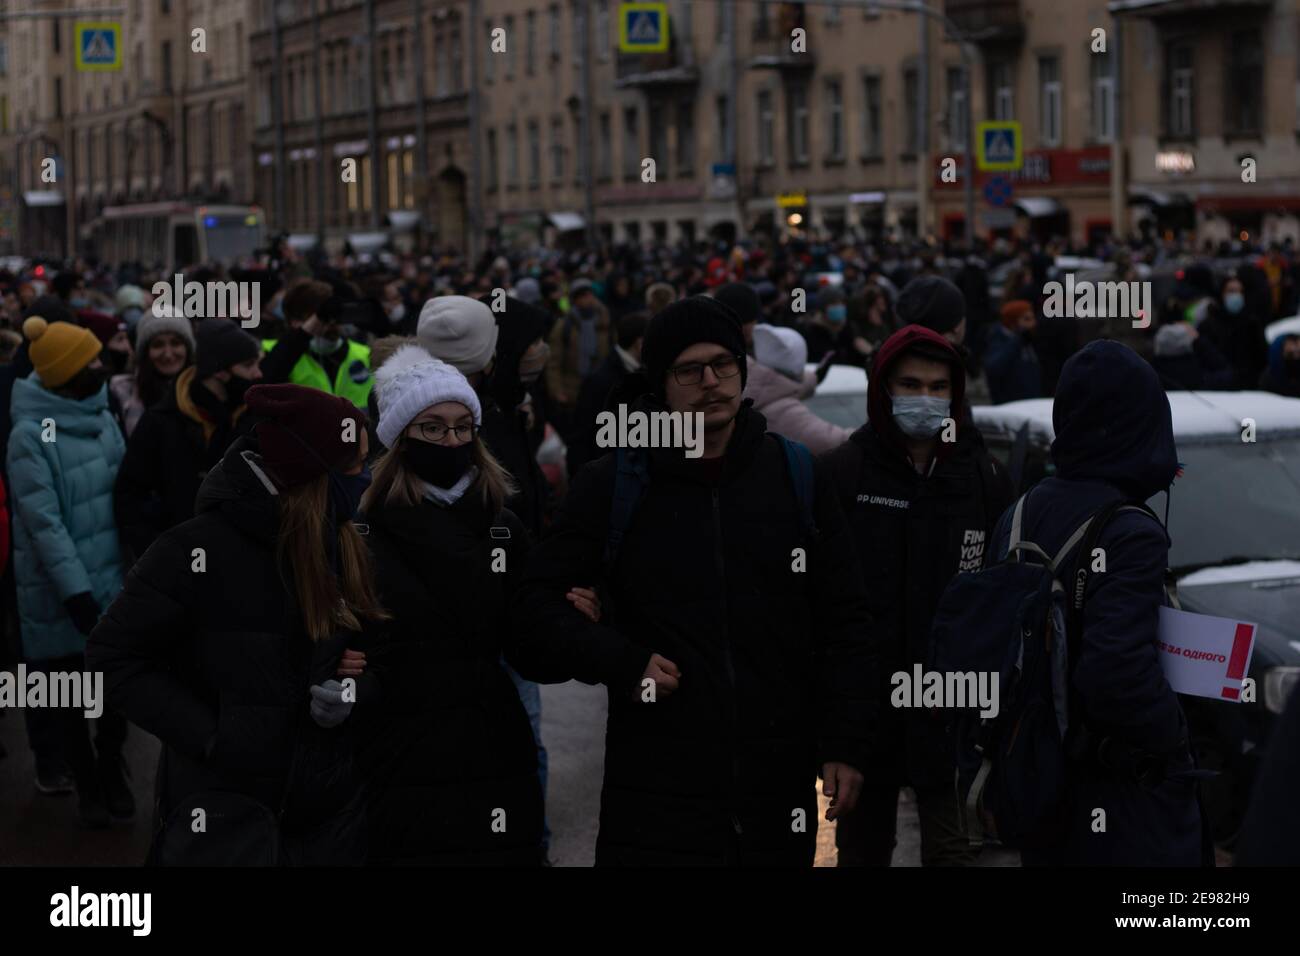 Sankt Petersburg, Russland - 31. Januar 2021: Menschenmenge marschiert auf der Straße, illustrative Editorial Stockfoto